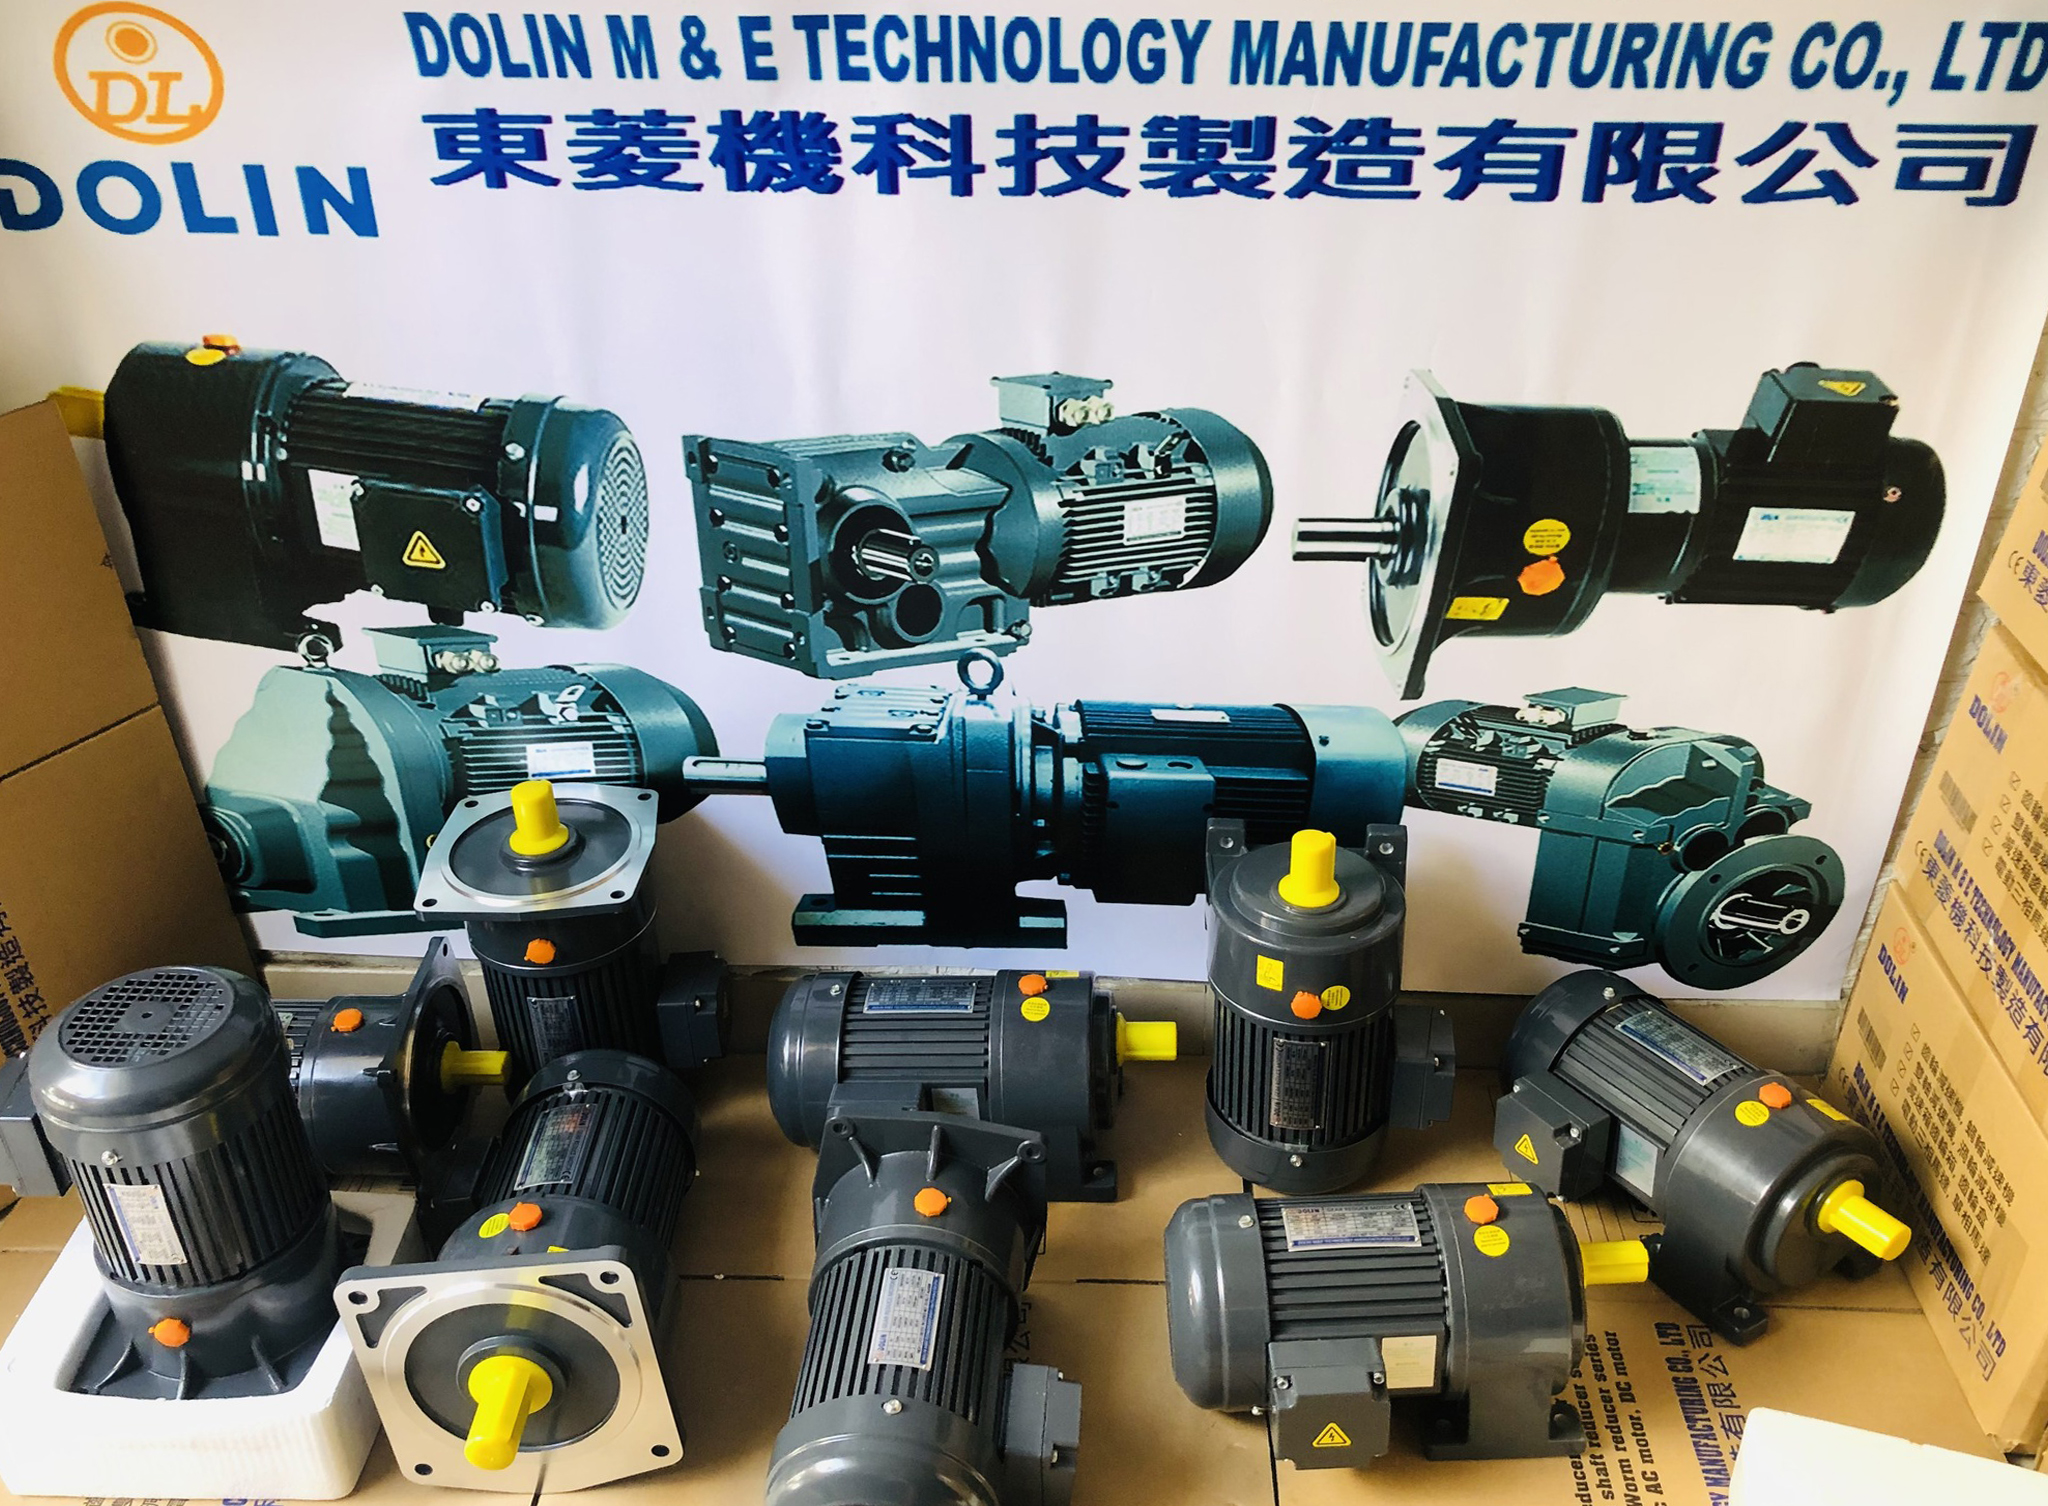 Tập đoàn Dolin chuyển nhà máy sản xuất từ Đài Trung, Đài Loan qua Việt Nam